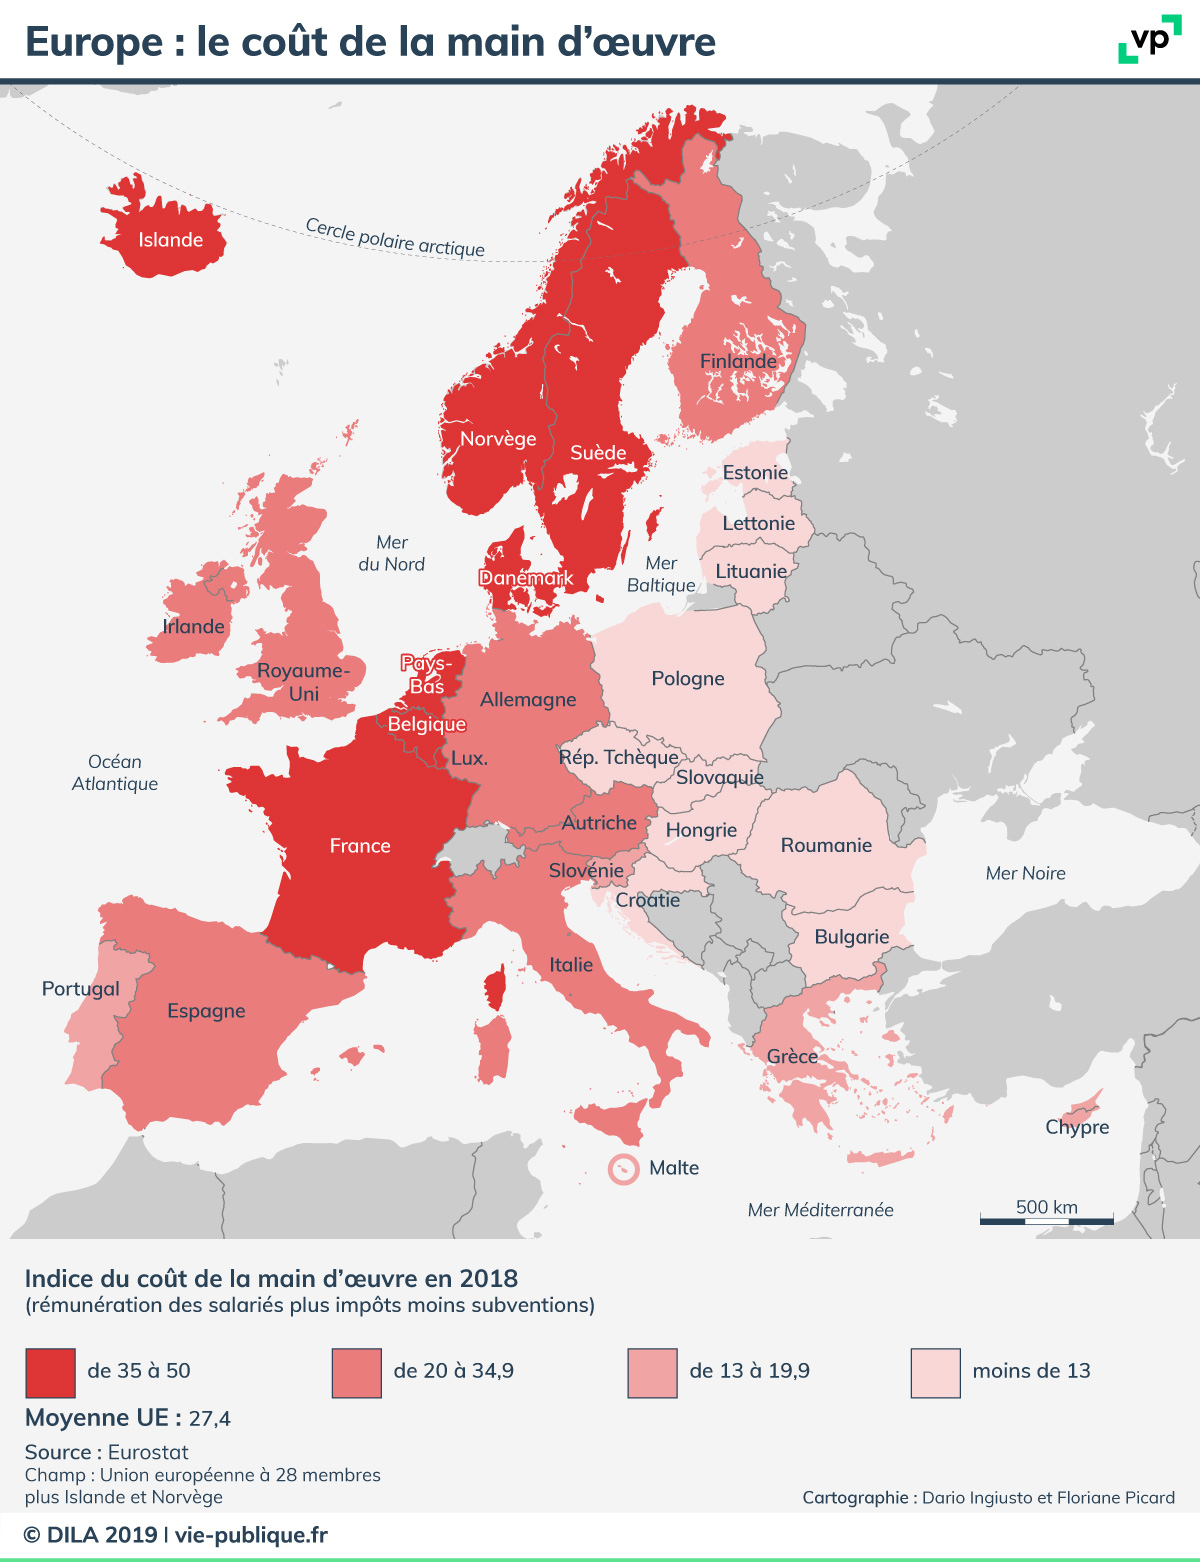 Europe : Le Coût De La Main D'œuvre | Vie Publique tout Carte Des Pays D Europe